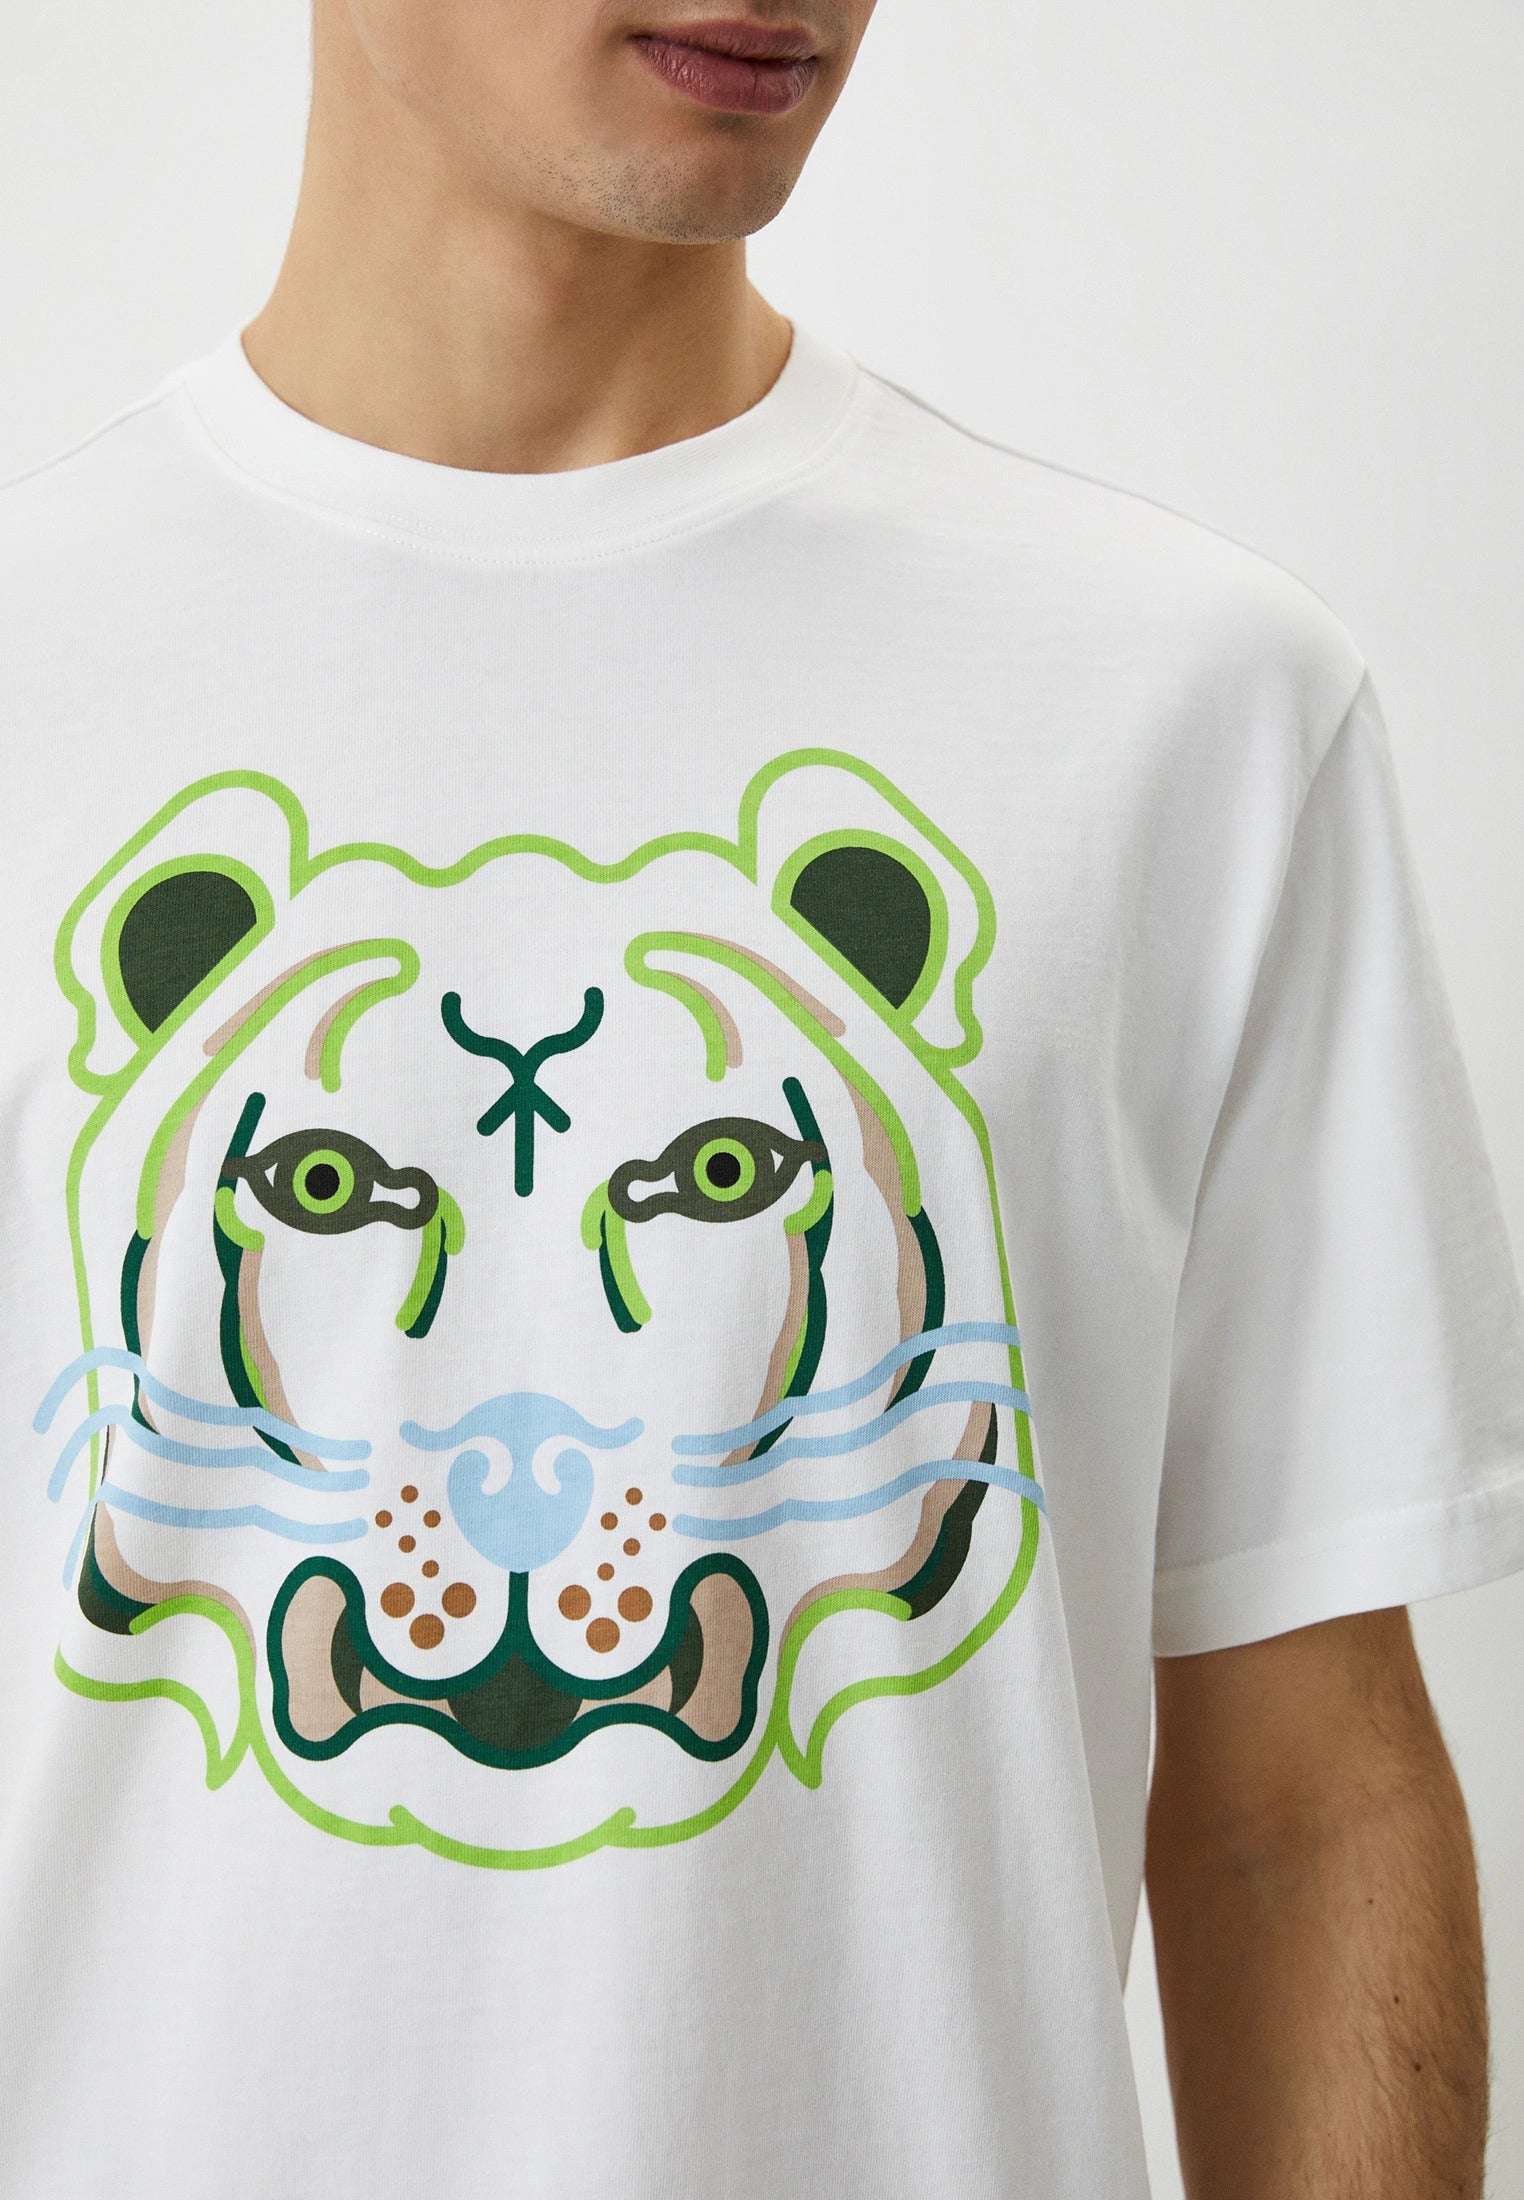 Kenzo Grafik Kaplan Logolu T-shirt-Libas Trendy Fashion Store